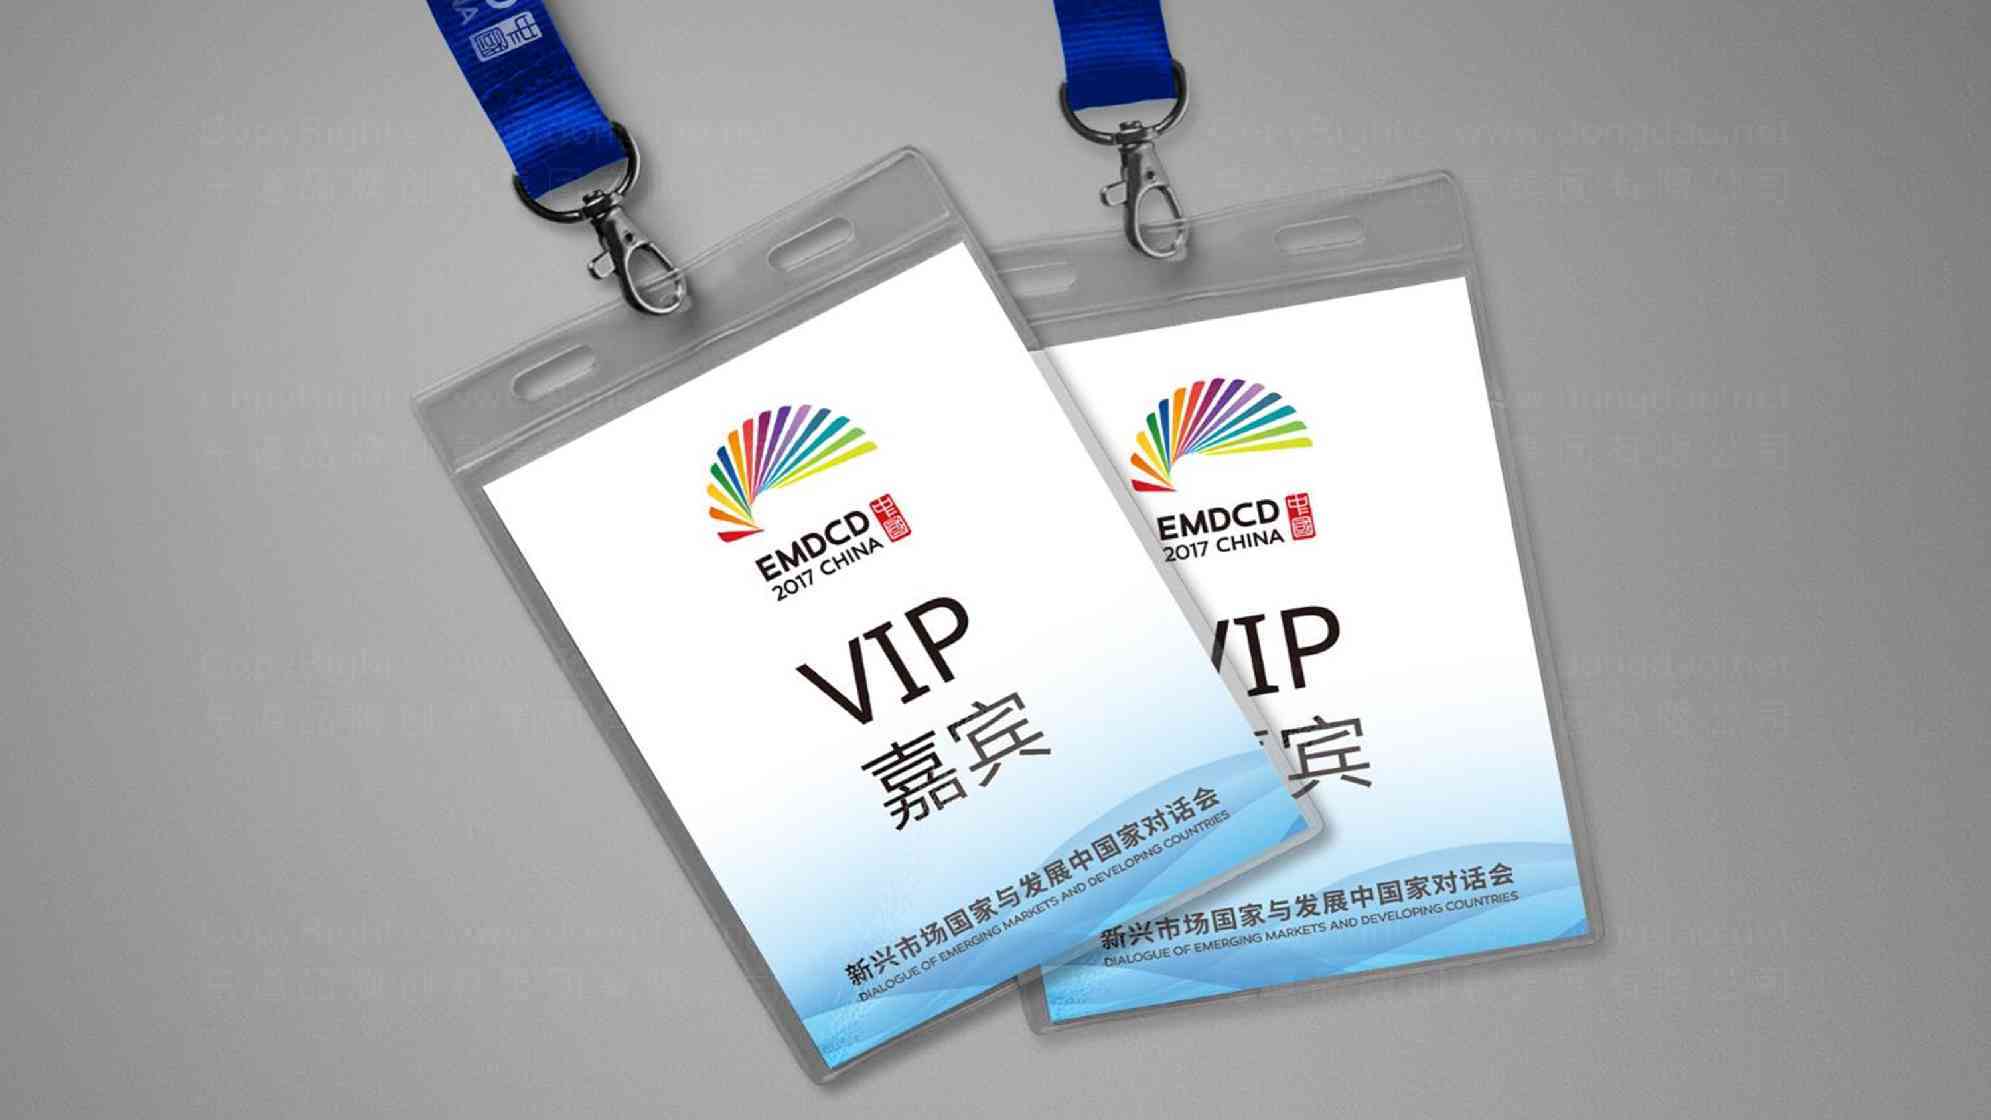 EMDCD 2017 CHINA政府vi设计图片素材